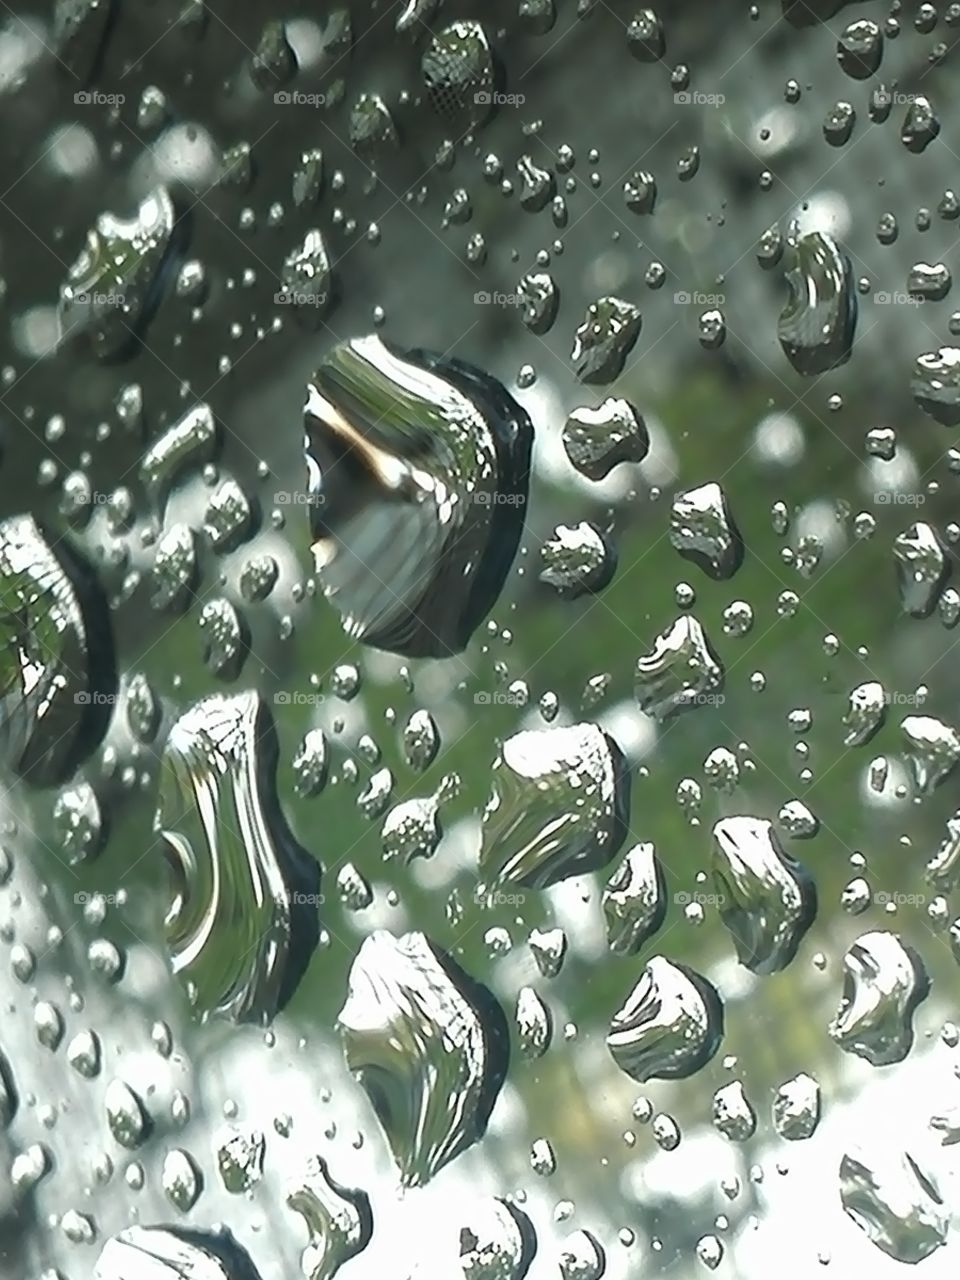 Waterdrops on window glass